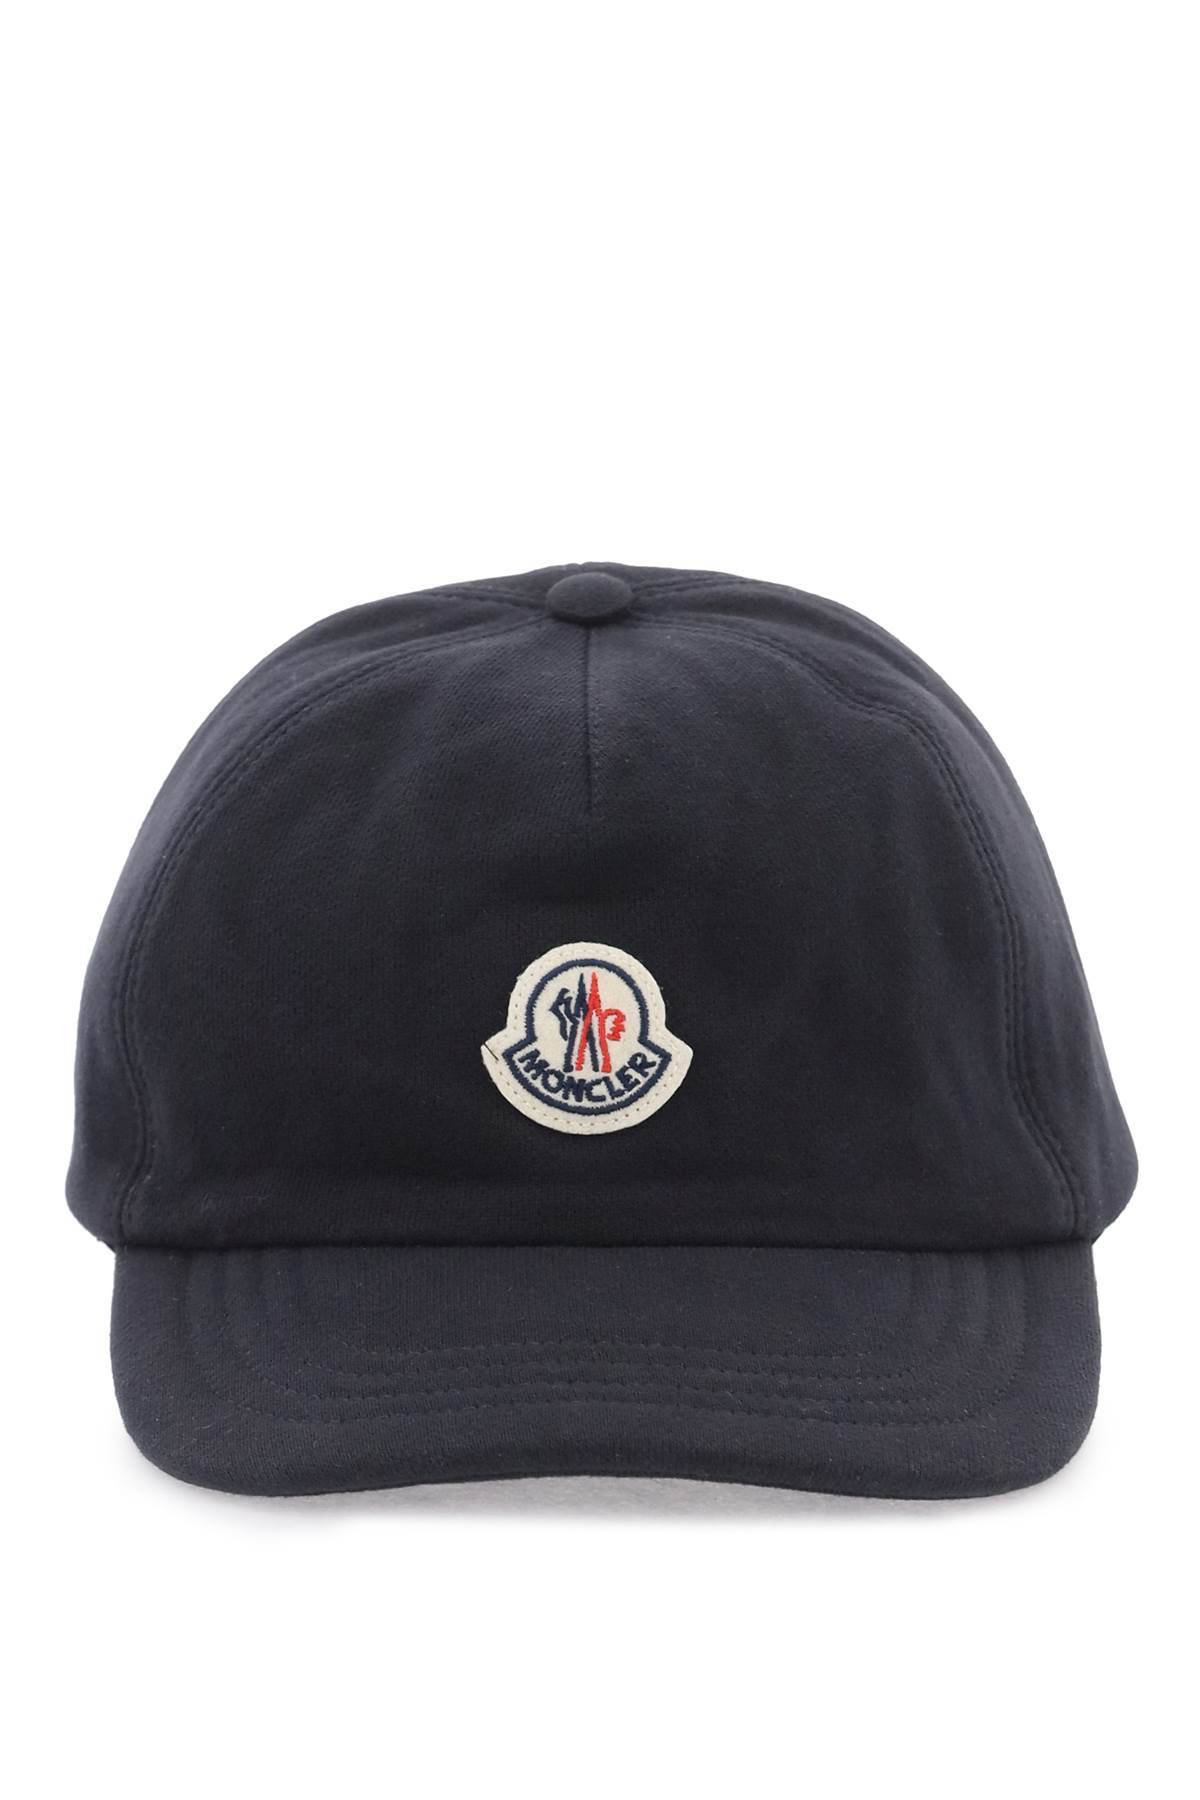 Moncler MONCLER baseball cap made of jersey